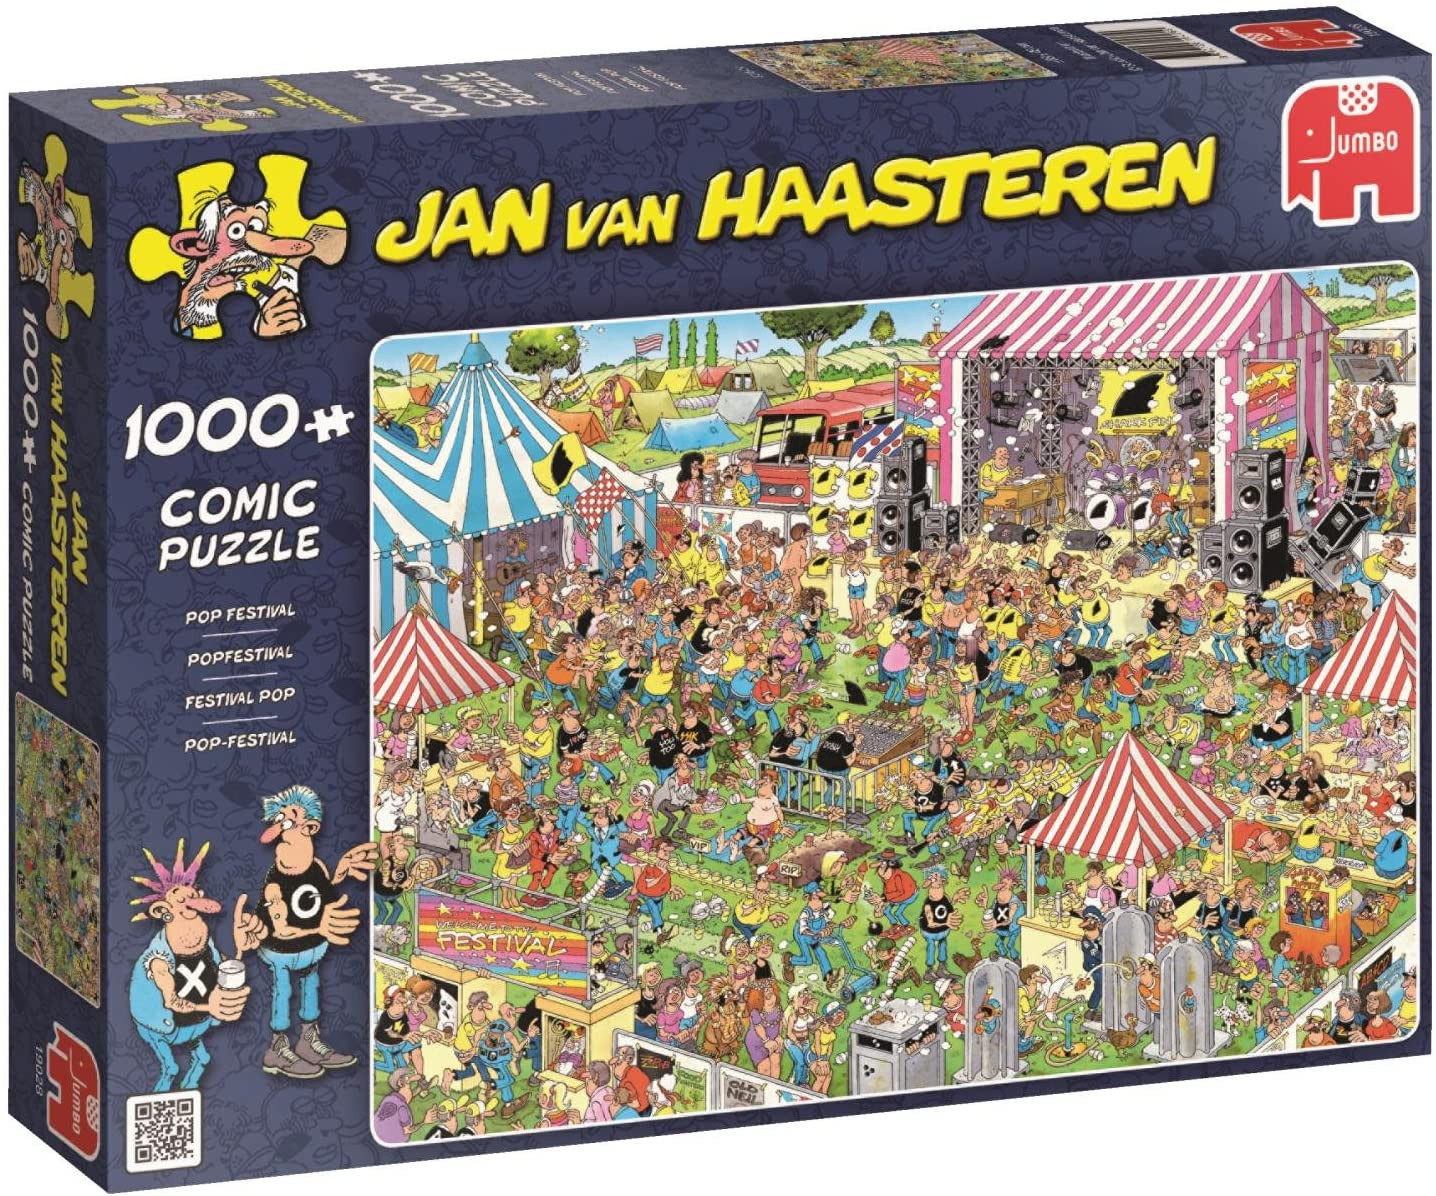 Puzzle 1000 pzs. Jan van Haasteren, Pop Festival